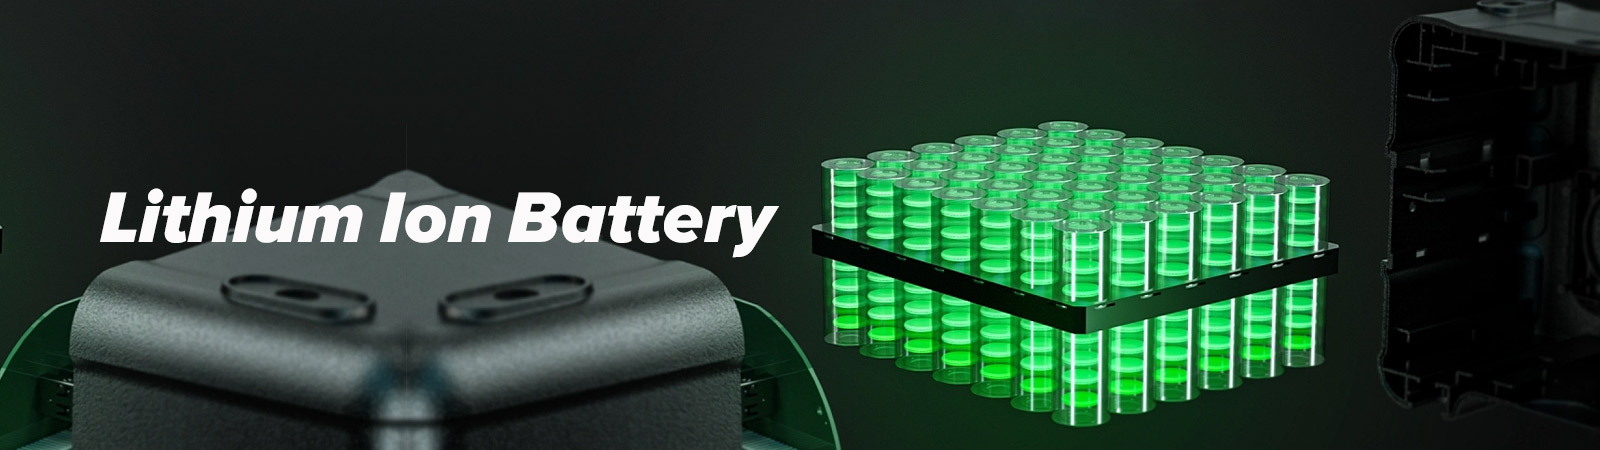 36V Lithium Battery